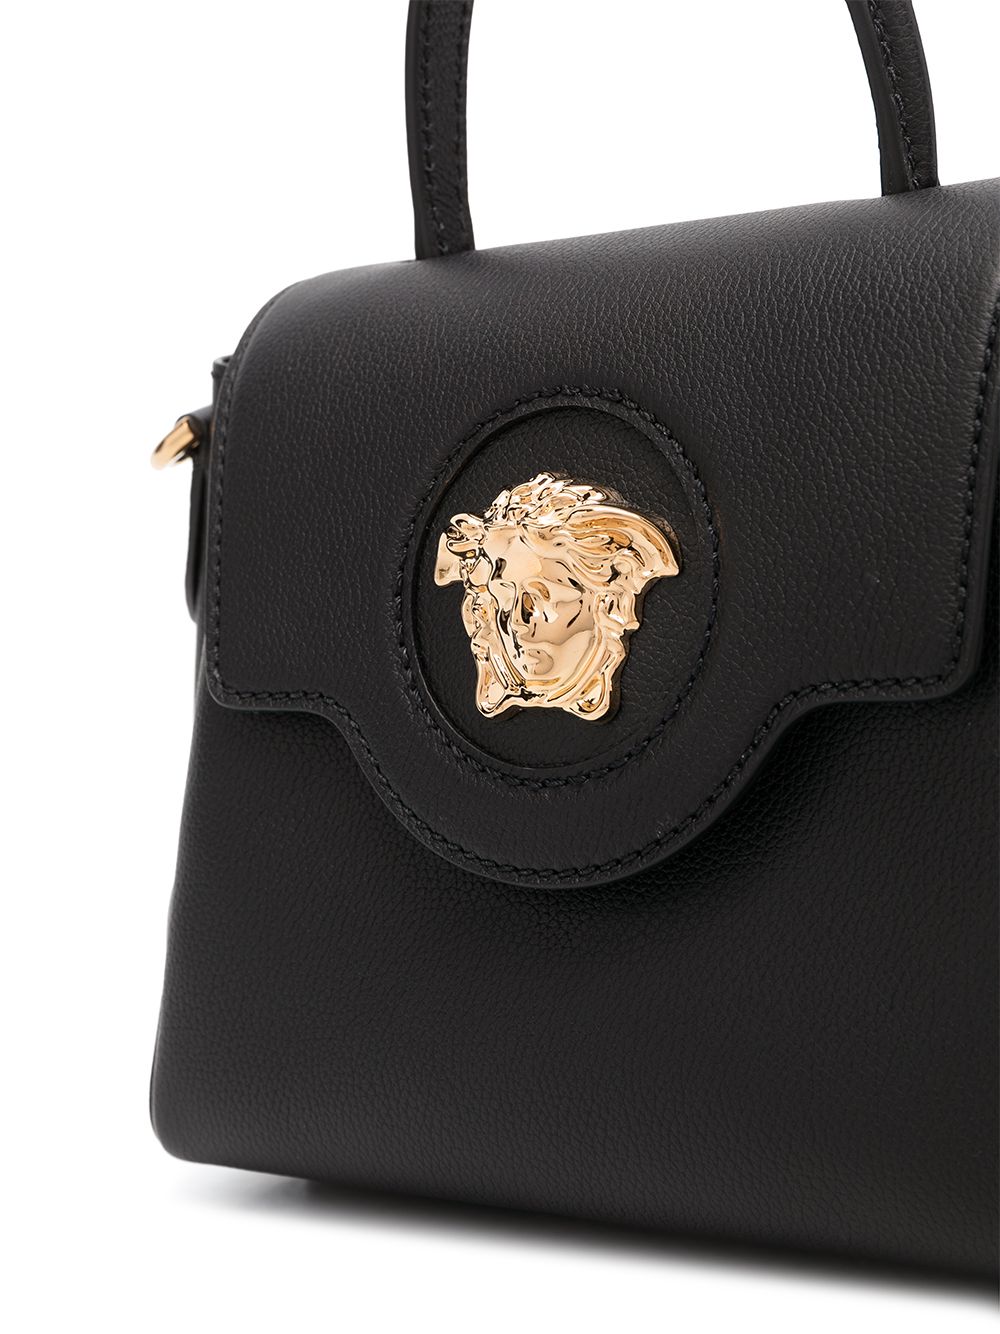 La medusa leather handbag Versace Black in Leather - 21921108